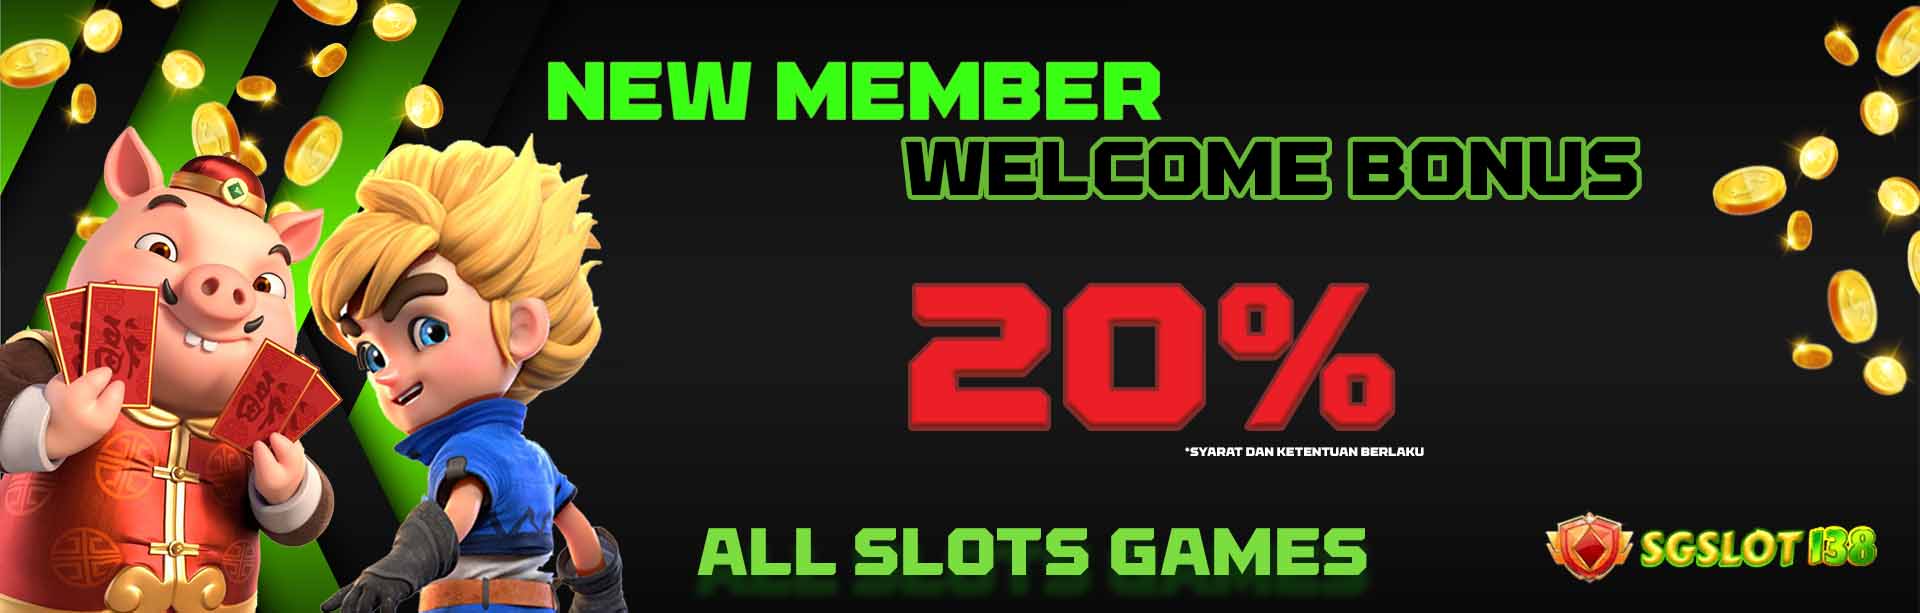 SGSlot138 Bonus New Member 20%